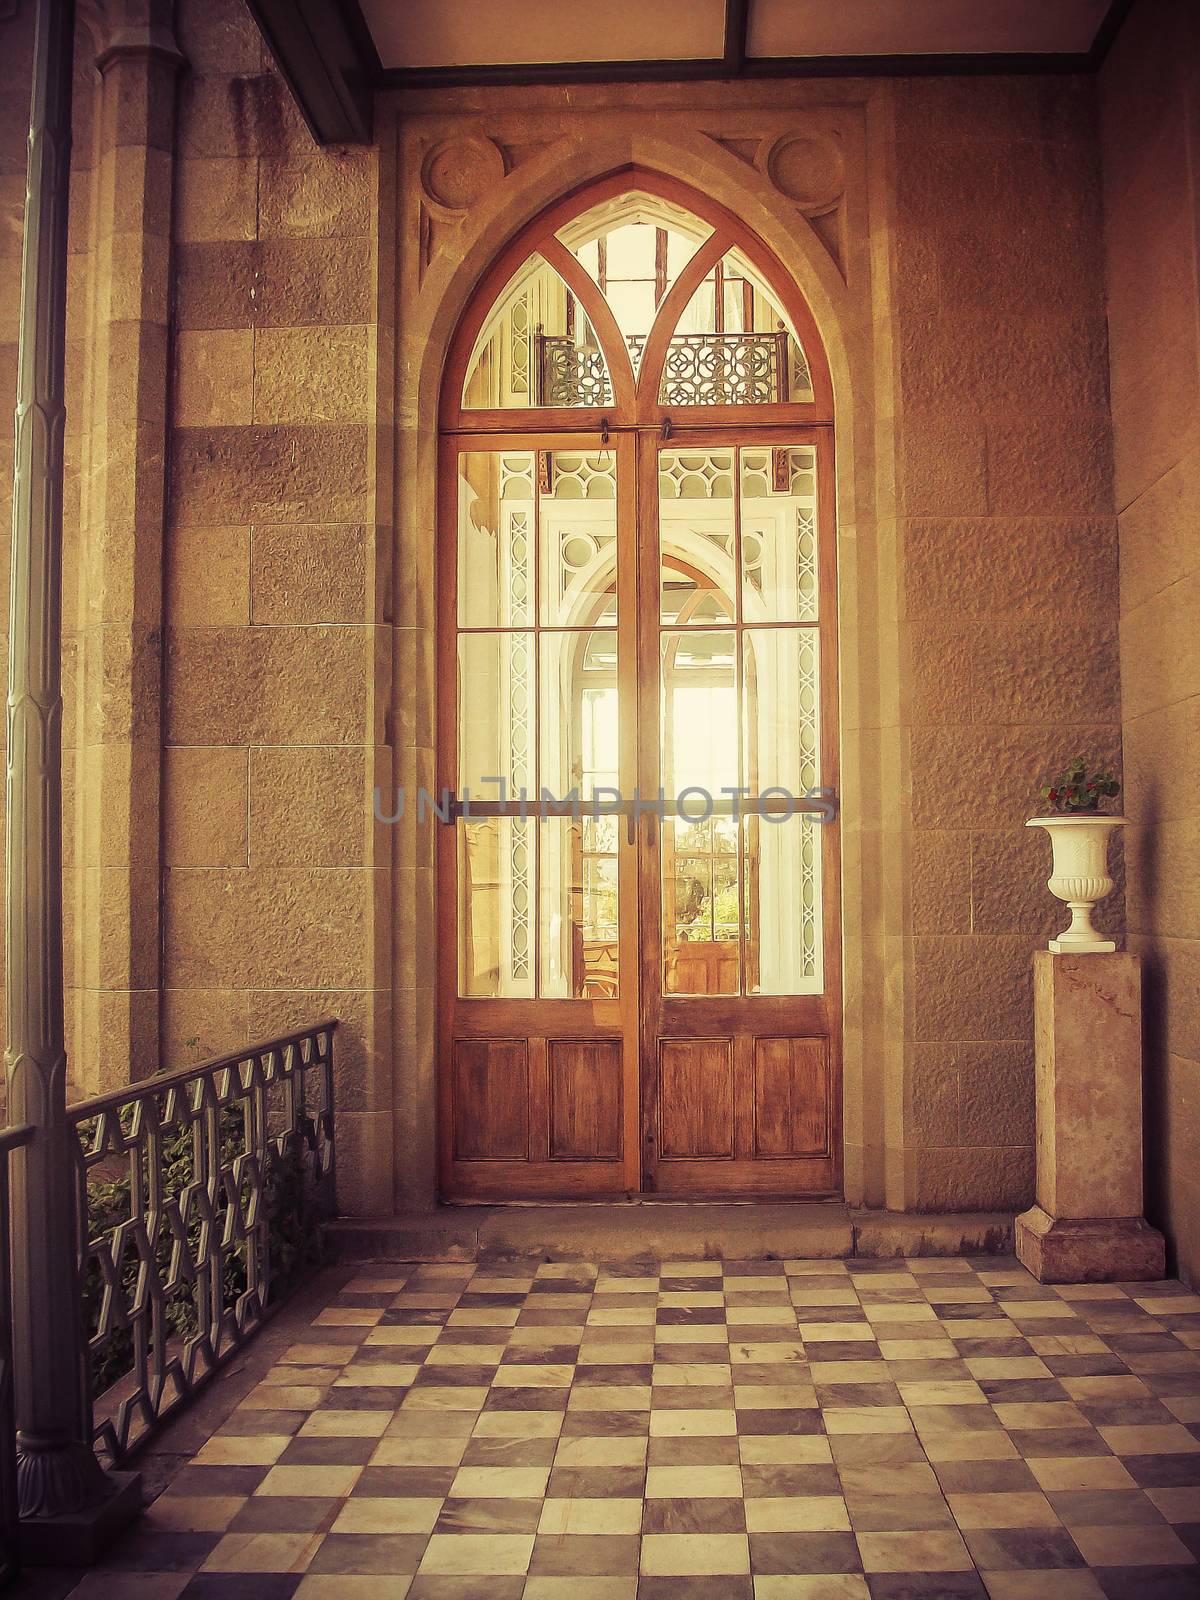 Door in old castle by natali_brill